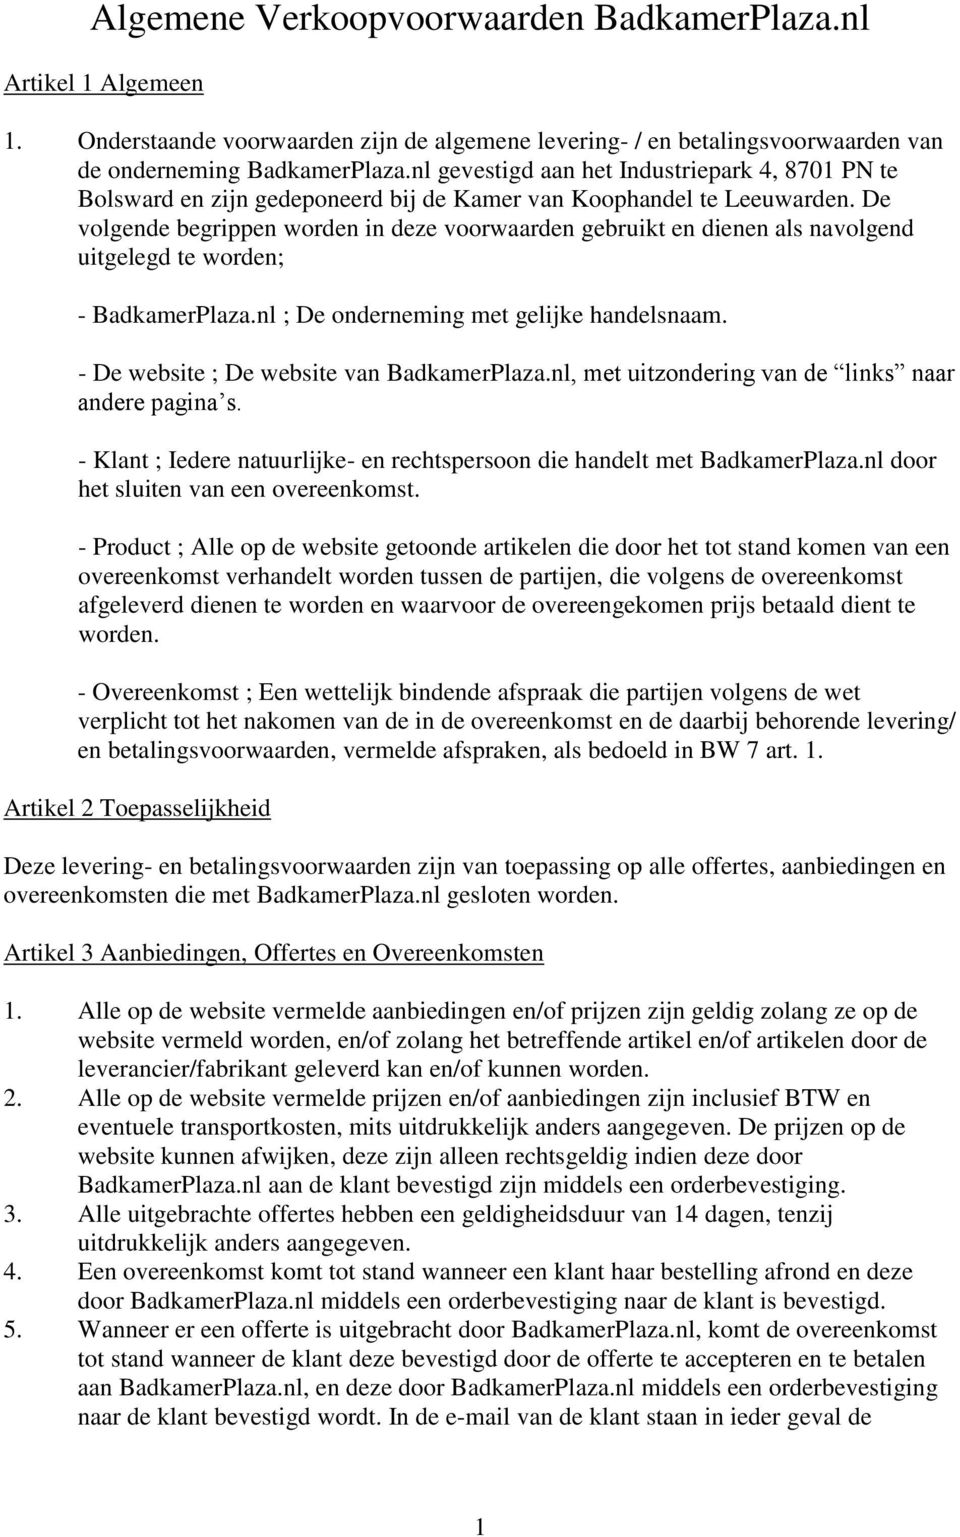 De volgende begrippen worden in deze voorwaarden gebruikt en dienen als navolgend uitgelegd te worden; - BadkamerPlaza.nl ; De onderneming met gelijke handelsnaam.